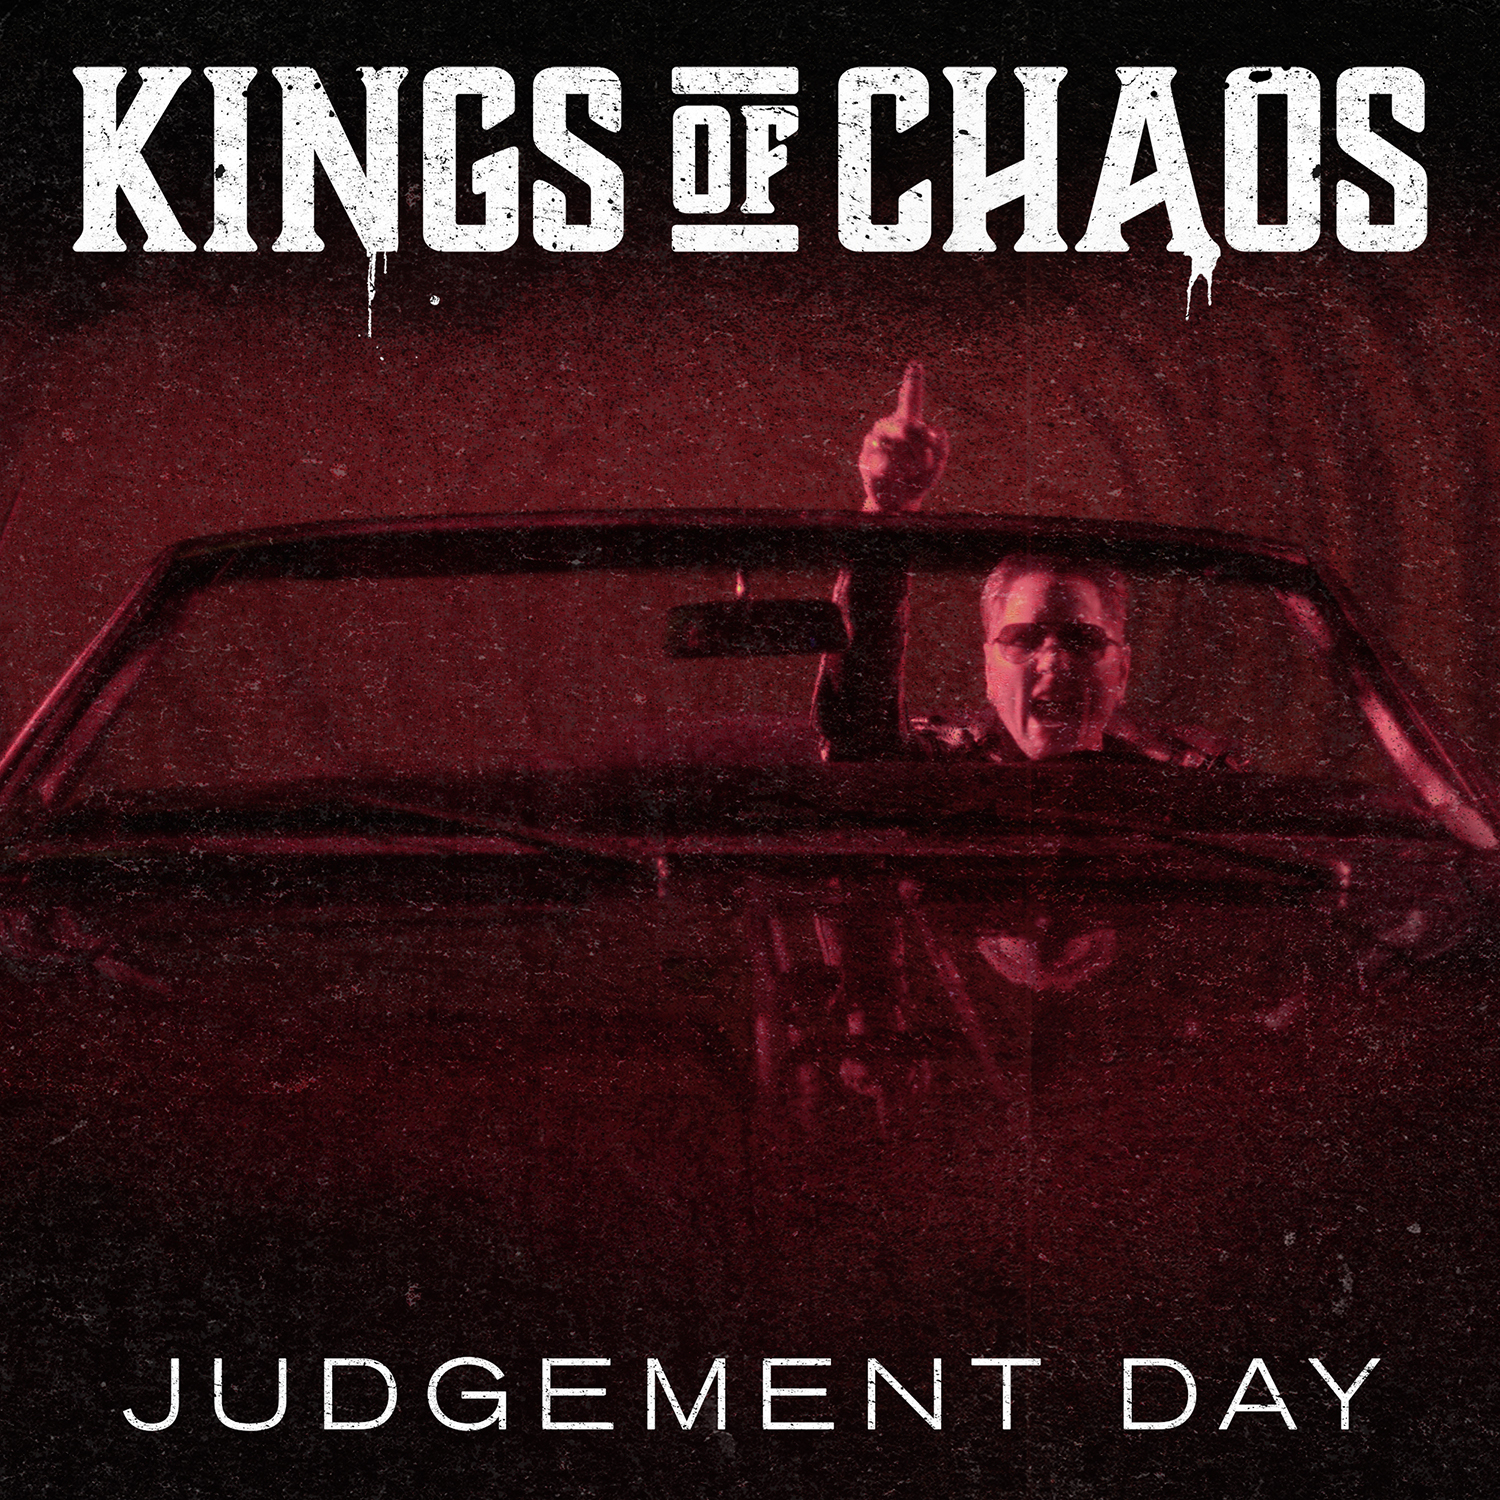 Kings Of Chaos – Proyecto de Matt Sorum – Presenta el single “Judgement Day”